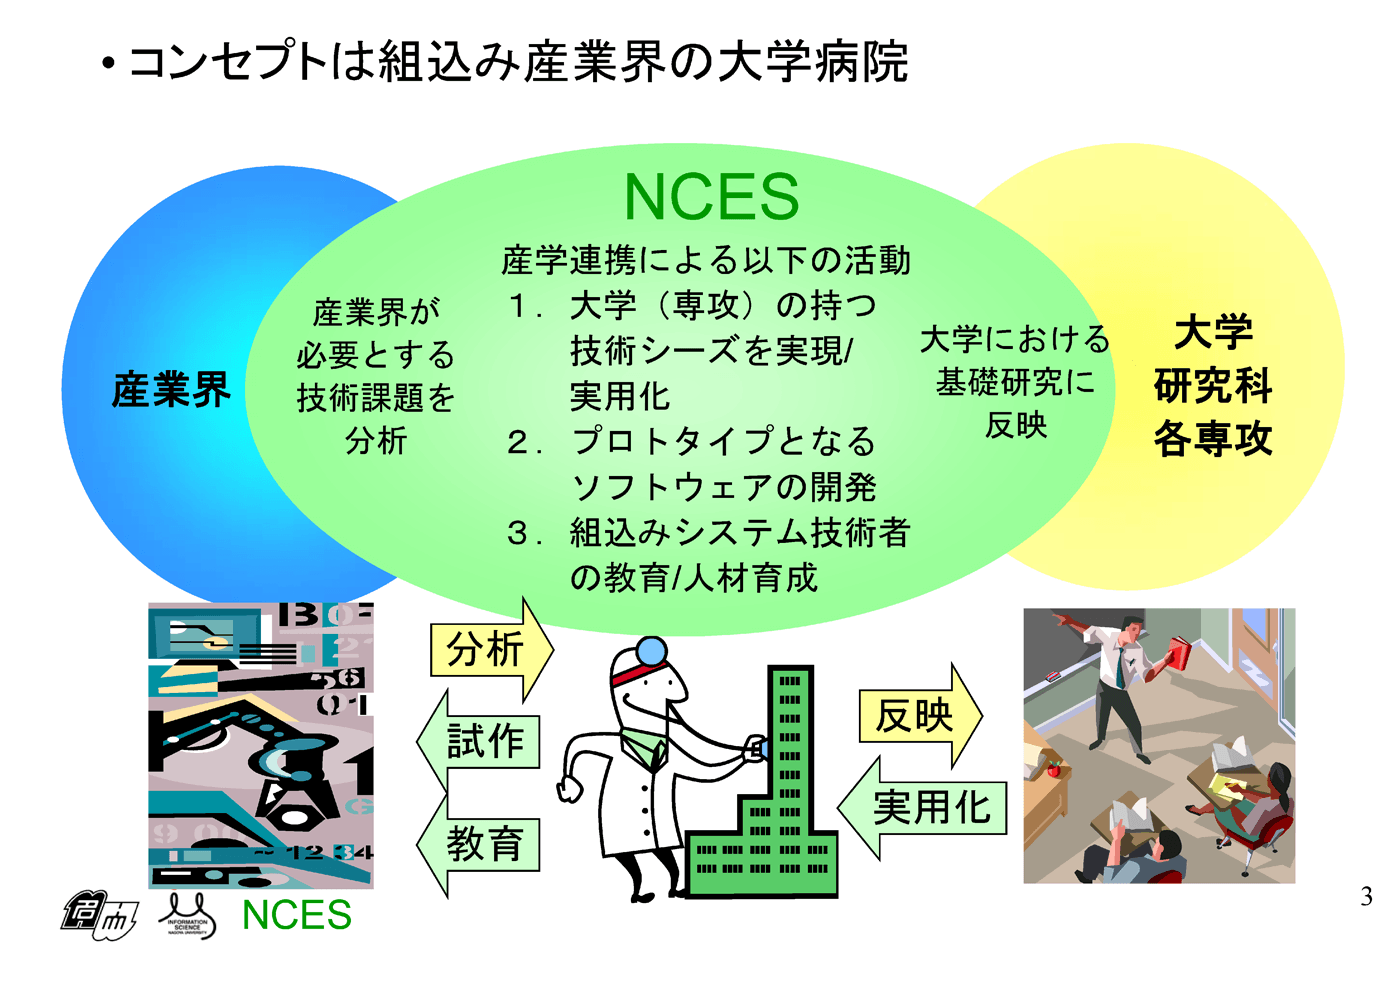 NCESの活動領域